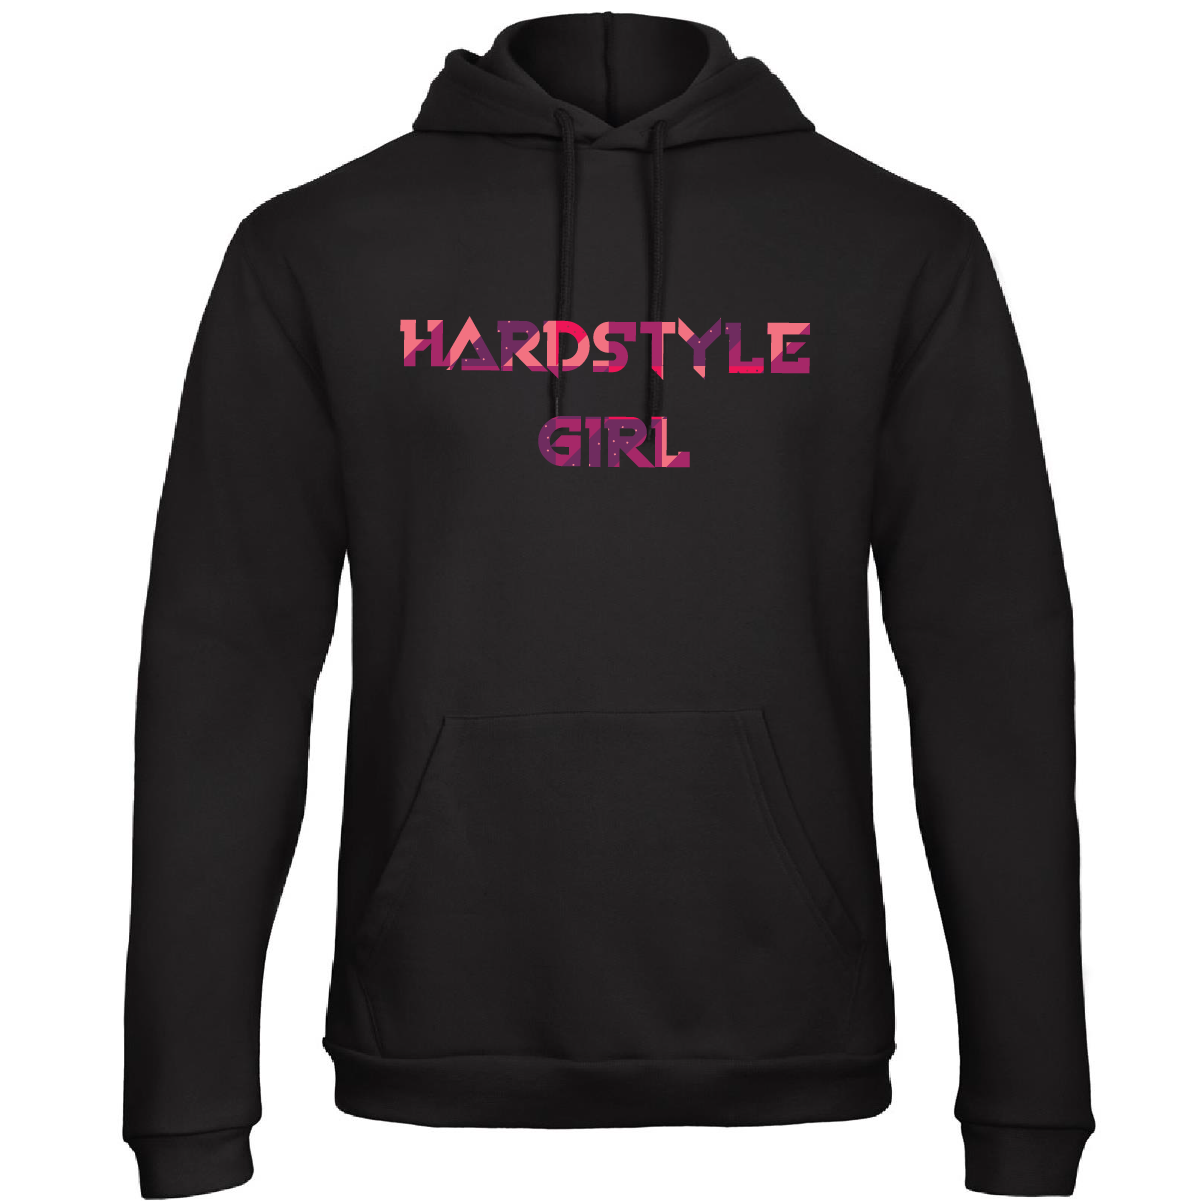 Hardstyle girl hoodie